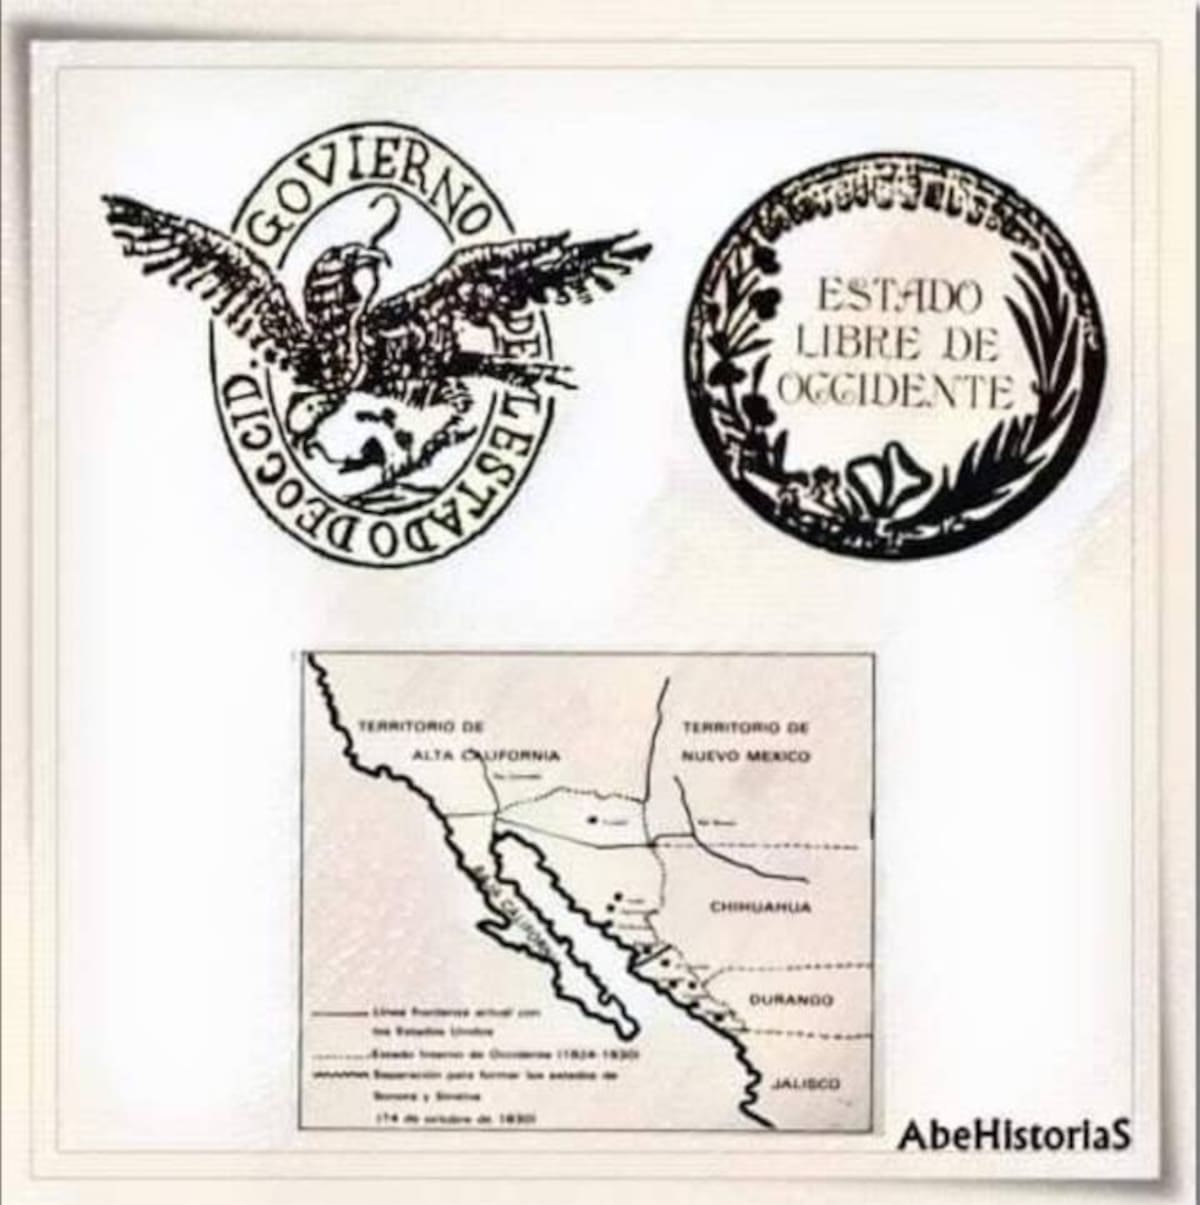 La constitución de 1824 reconocía al Estado de Occidente, unión entre Sonora, Sinaloa y parte de Arizona.